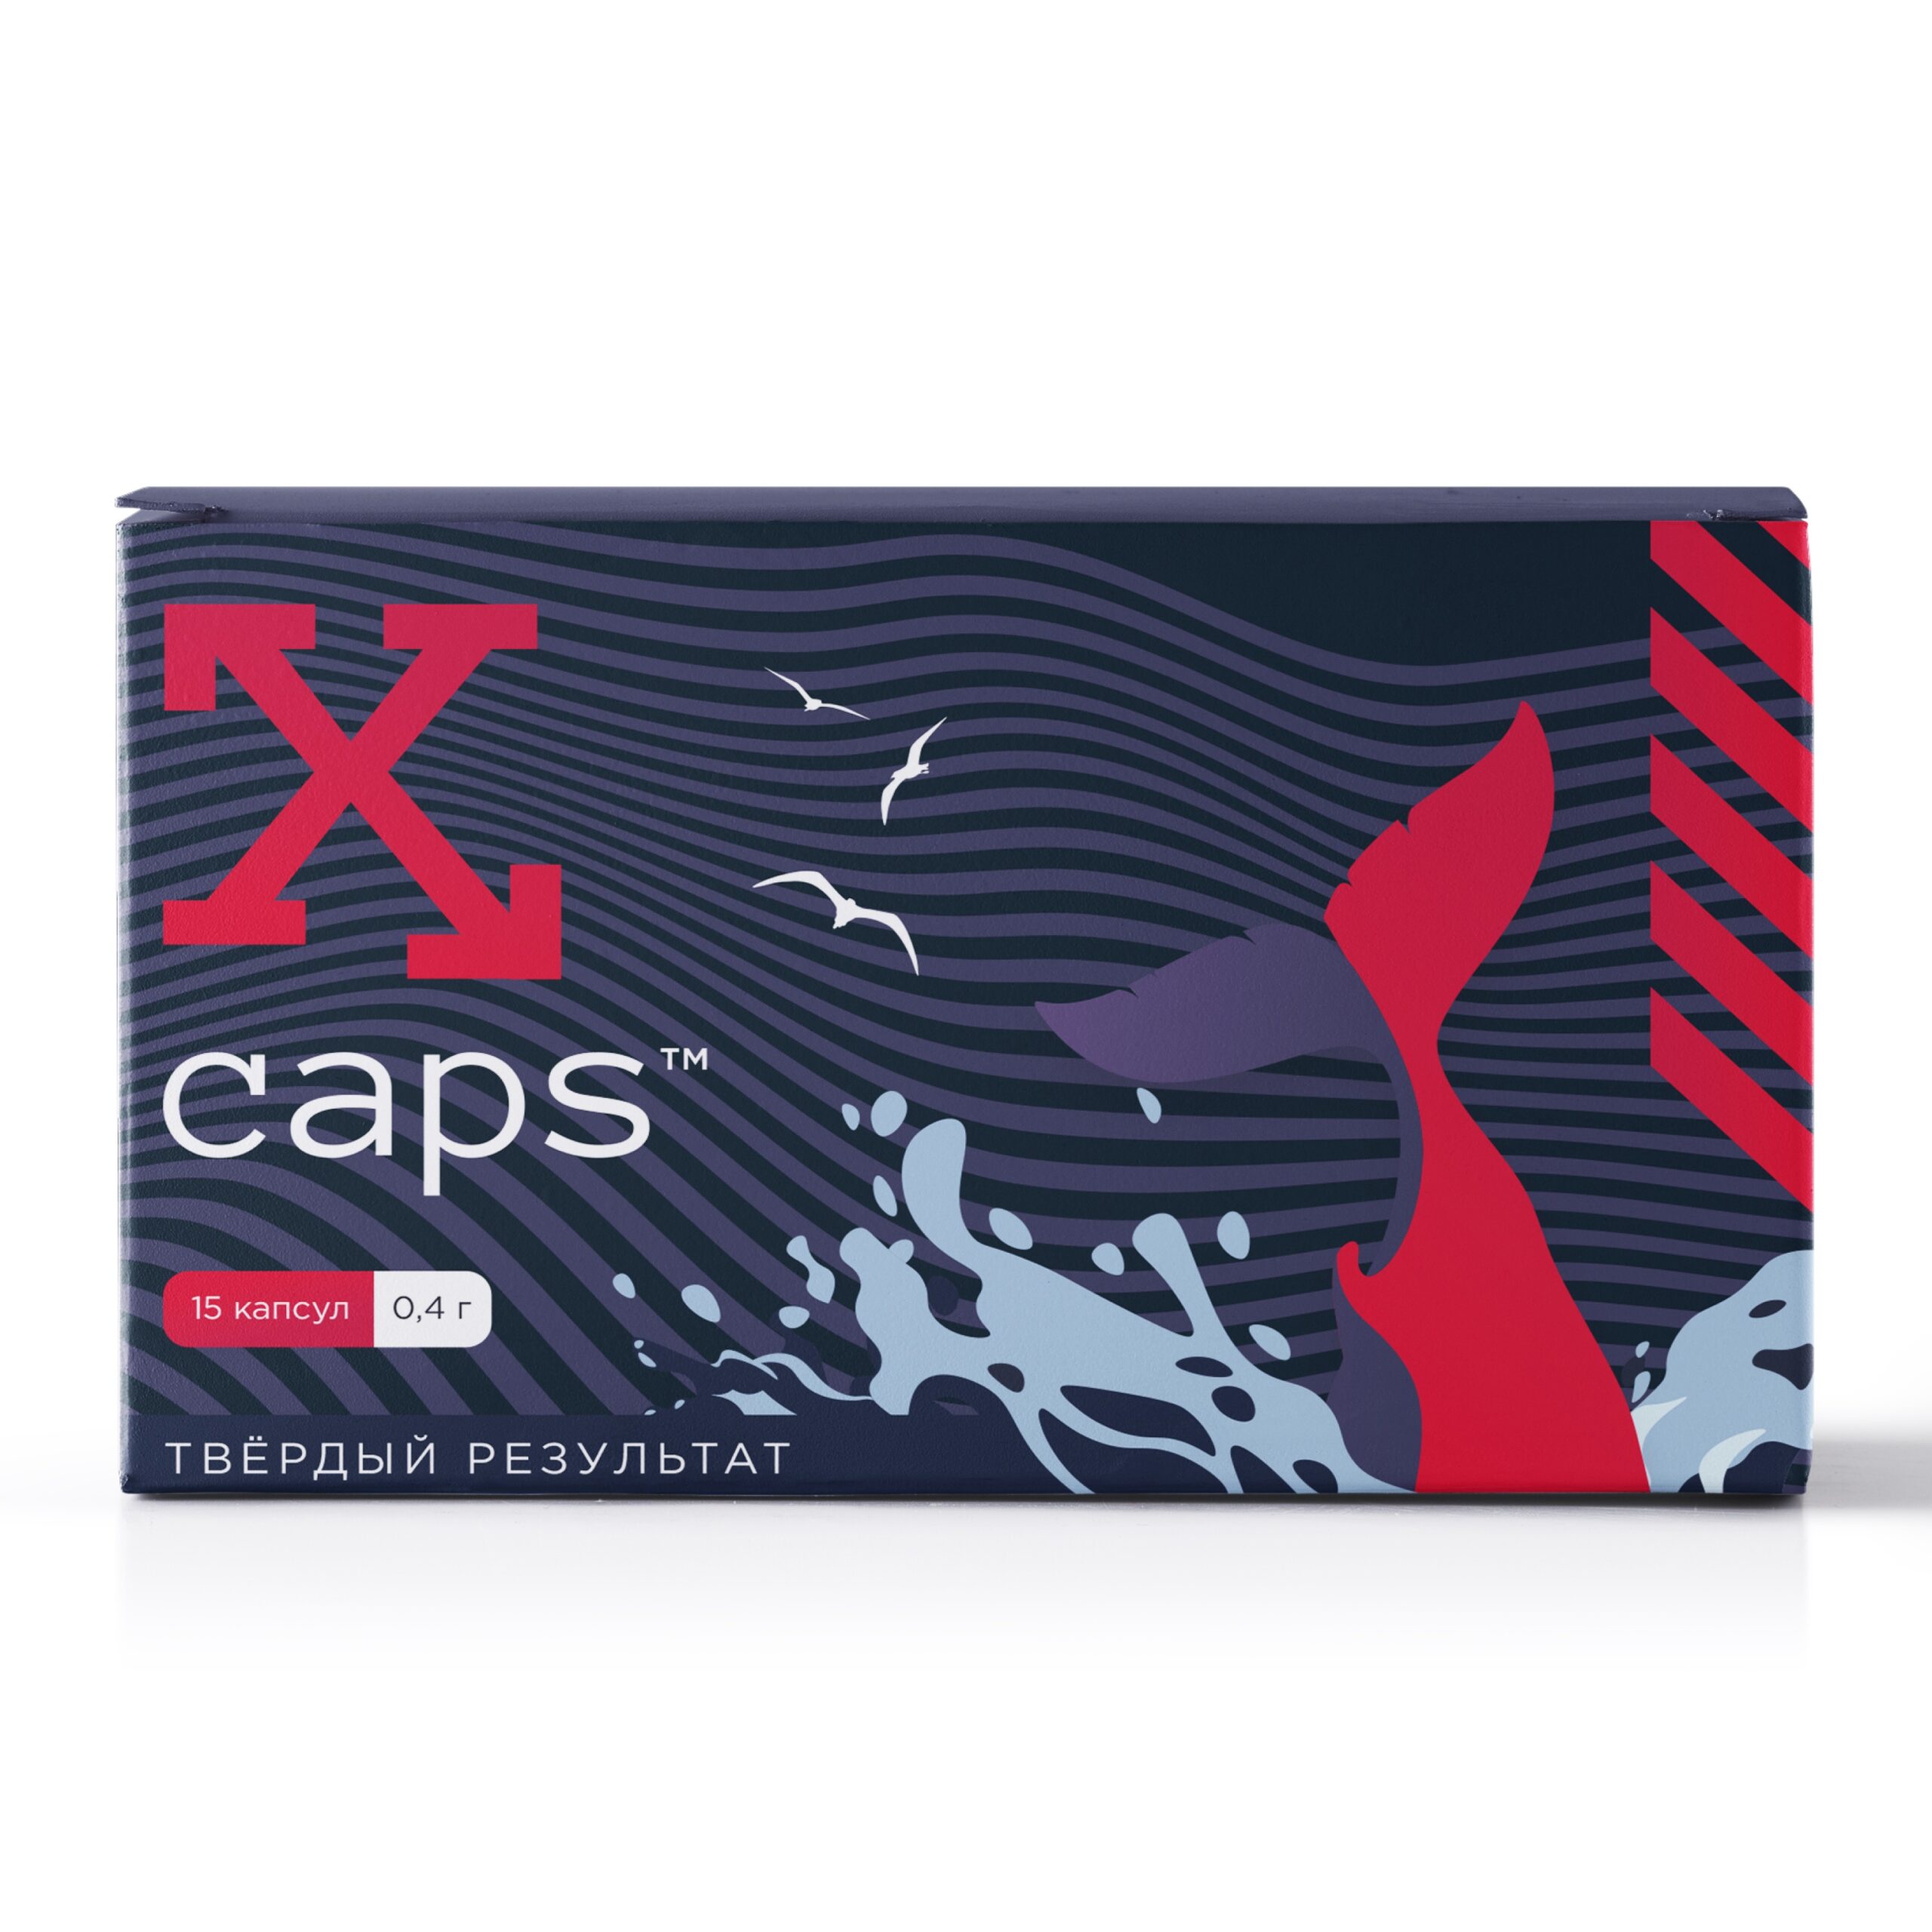 X-Caps